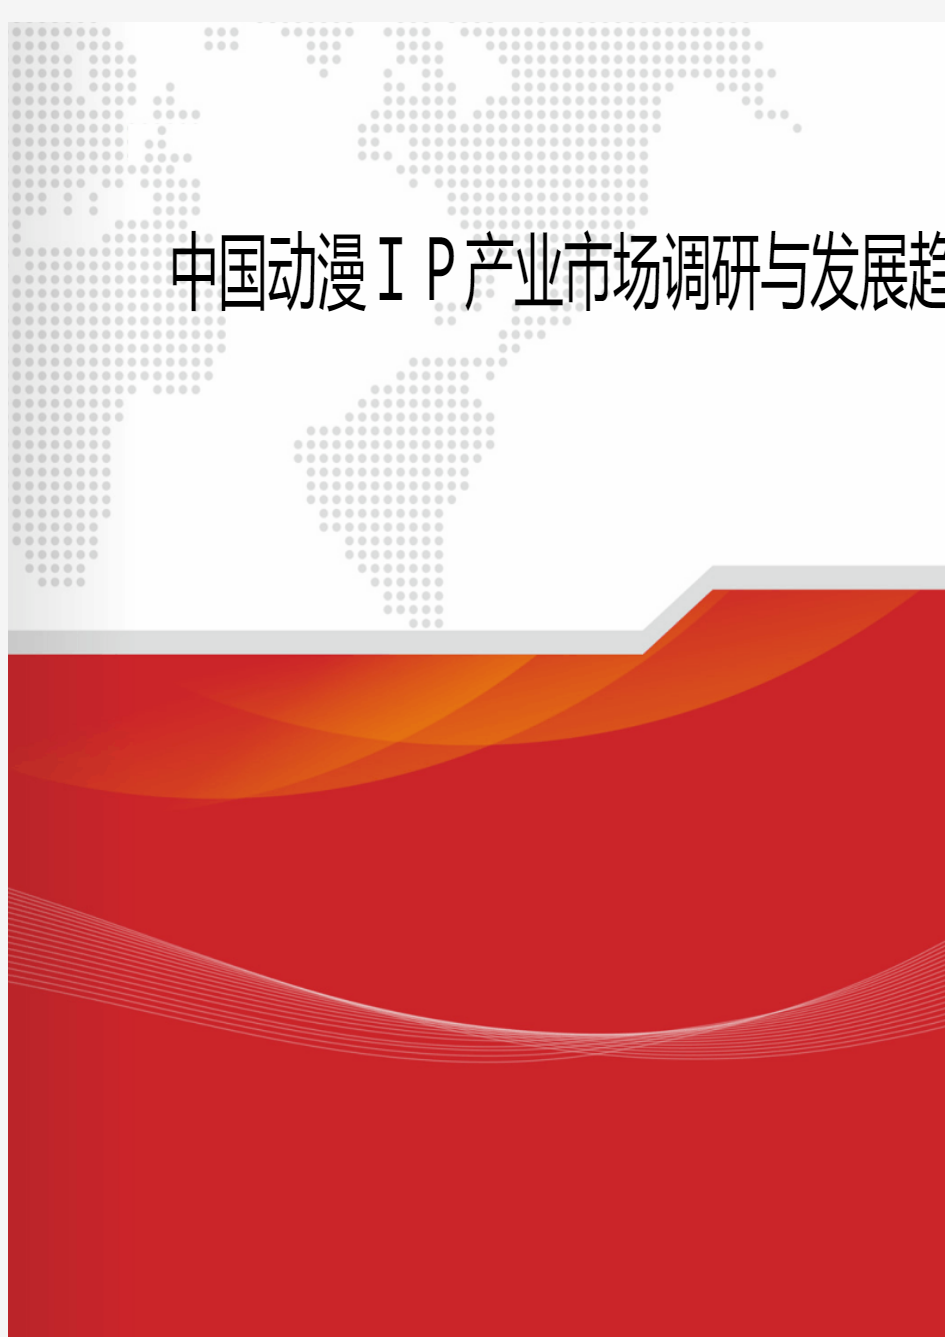 2018年中国动漫IP产业市场调研与发展趋势分析